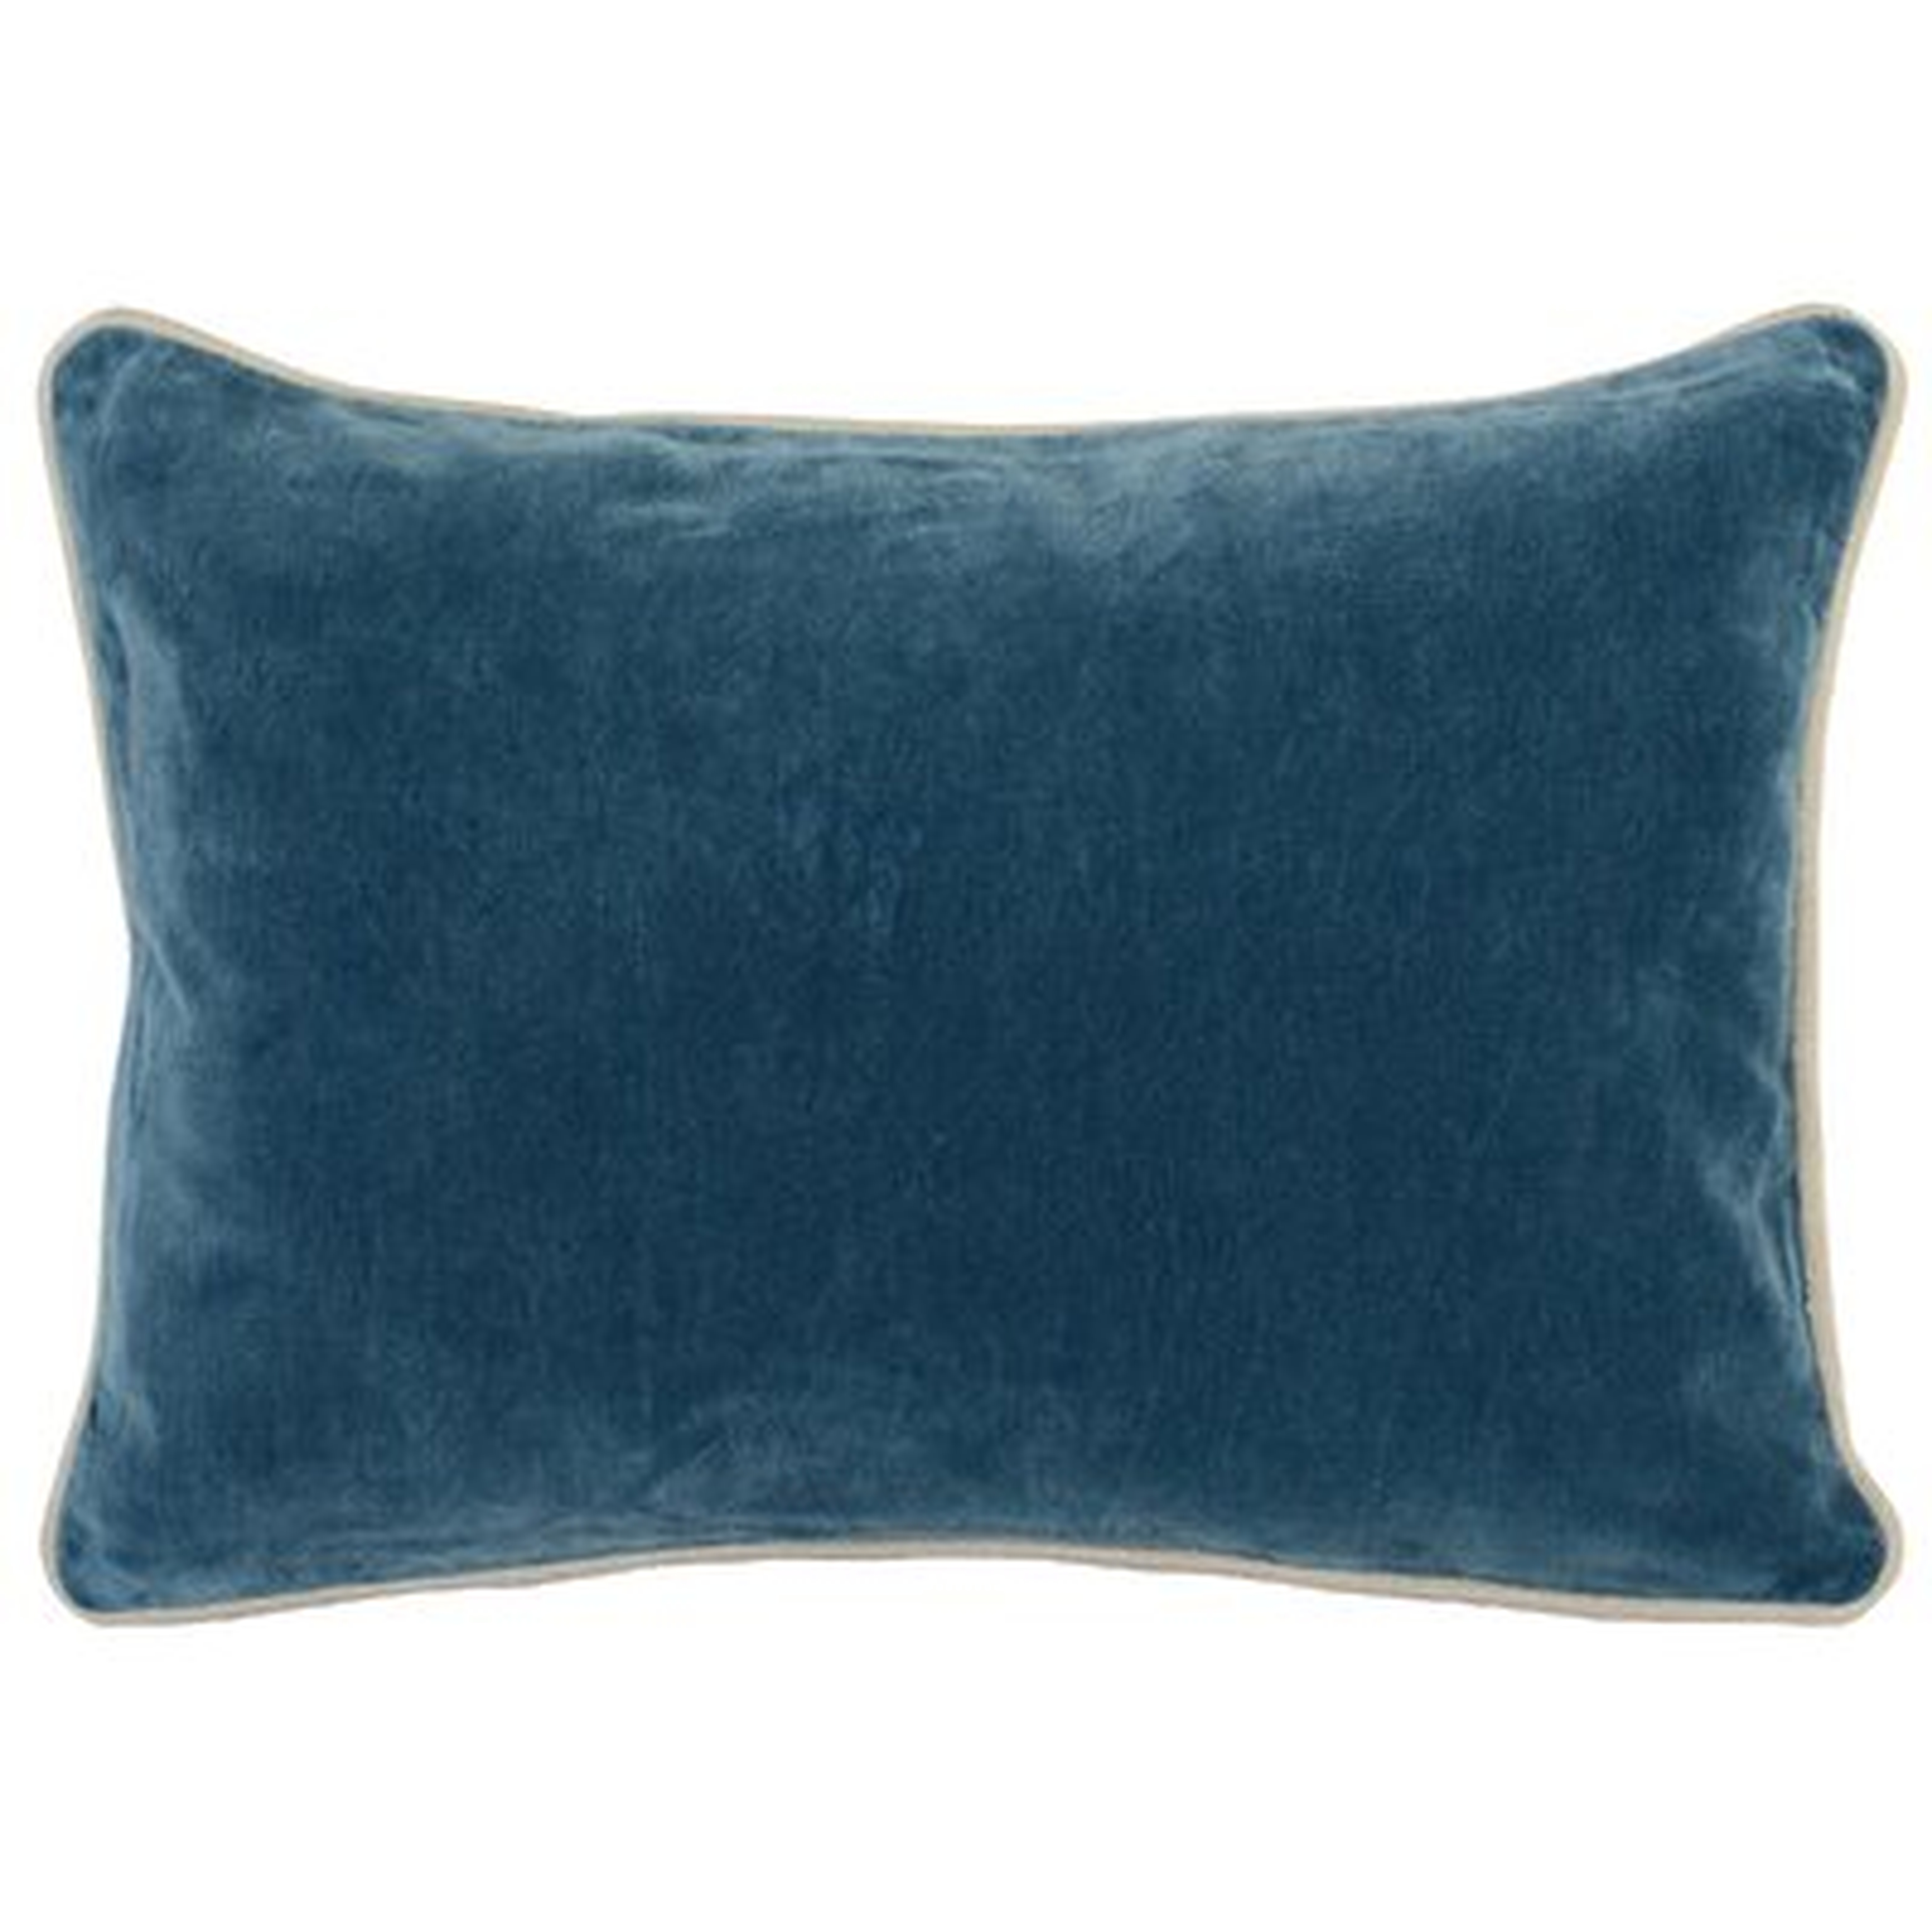 Tsakig Rectangular Cotton Pillow Cover and Insert - Wayfair